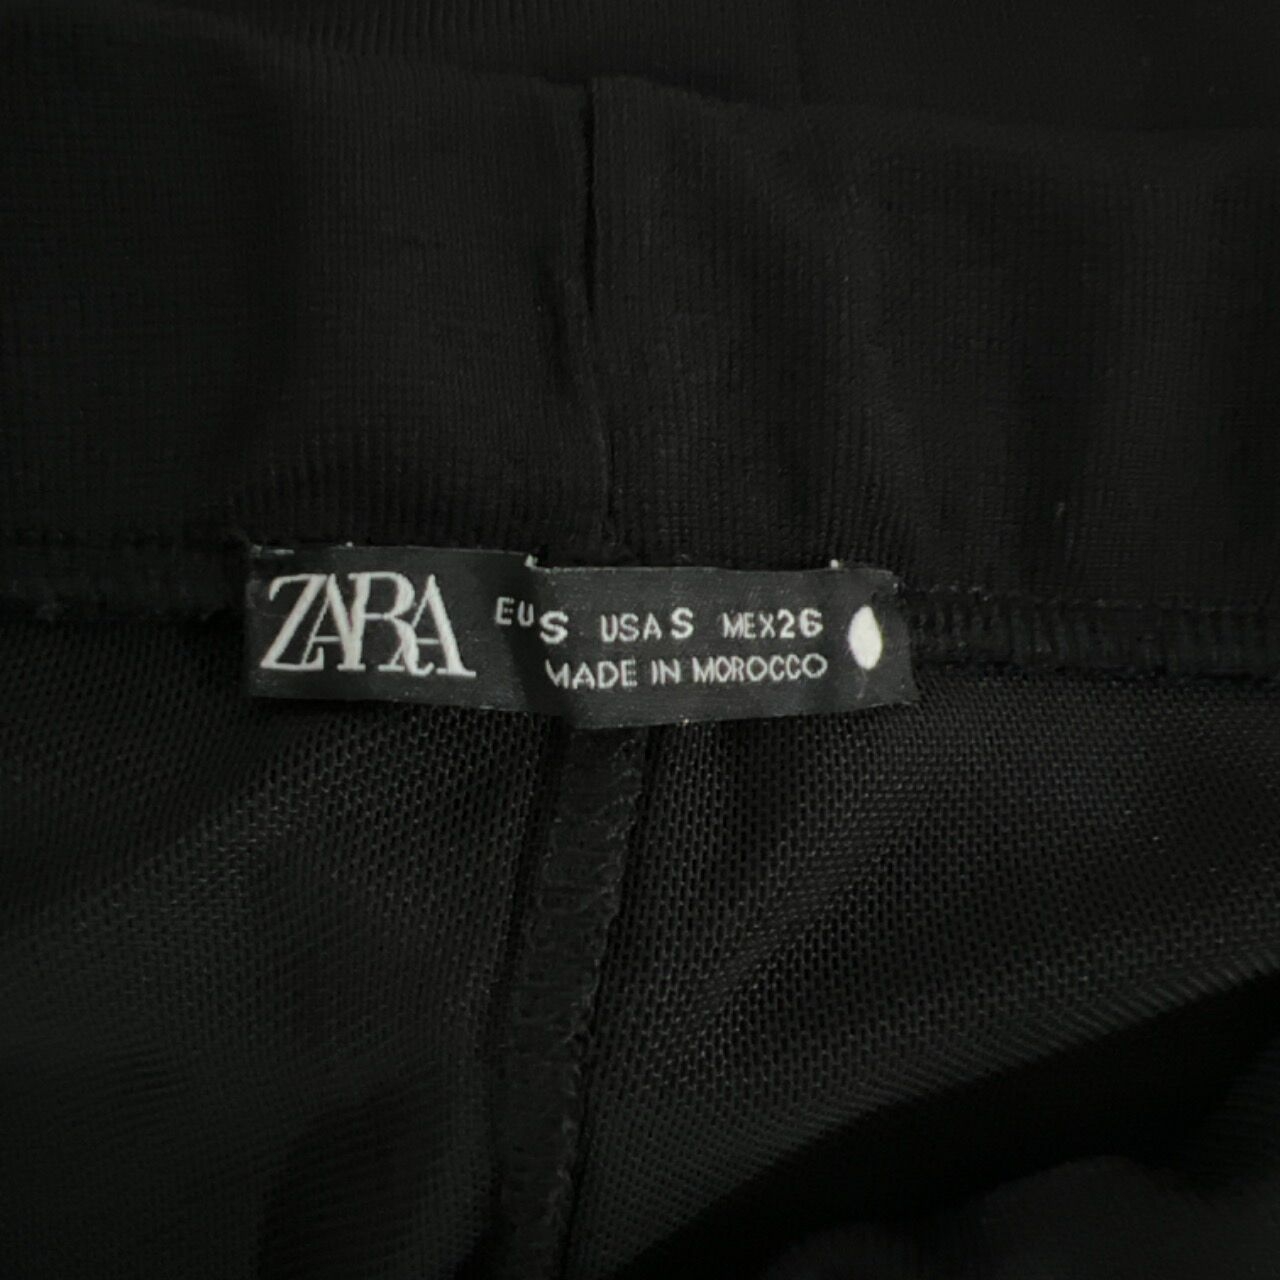 Zara Black Semi-sheer Midi Skirt